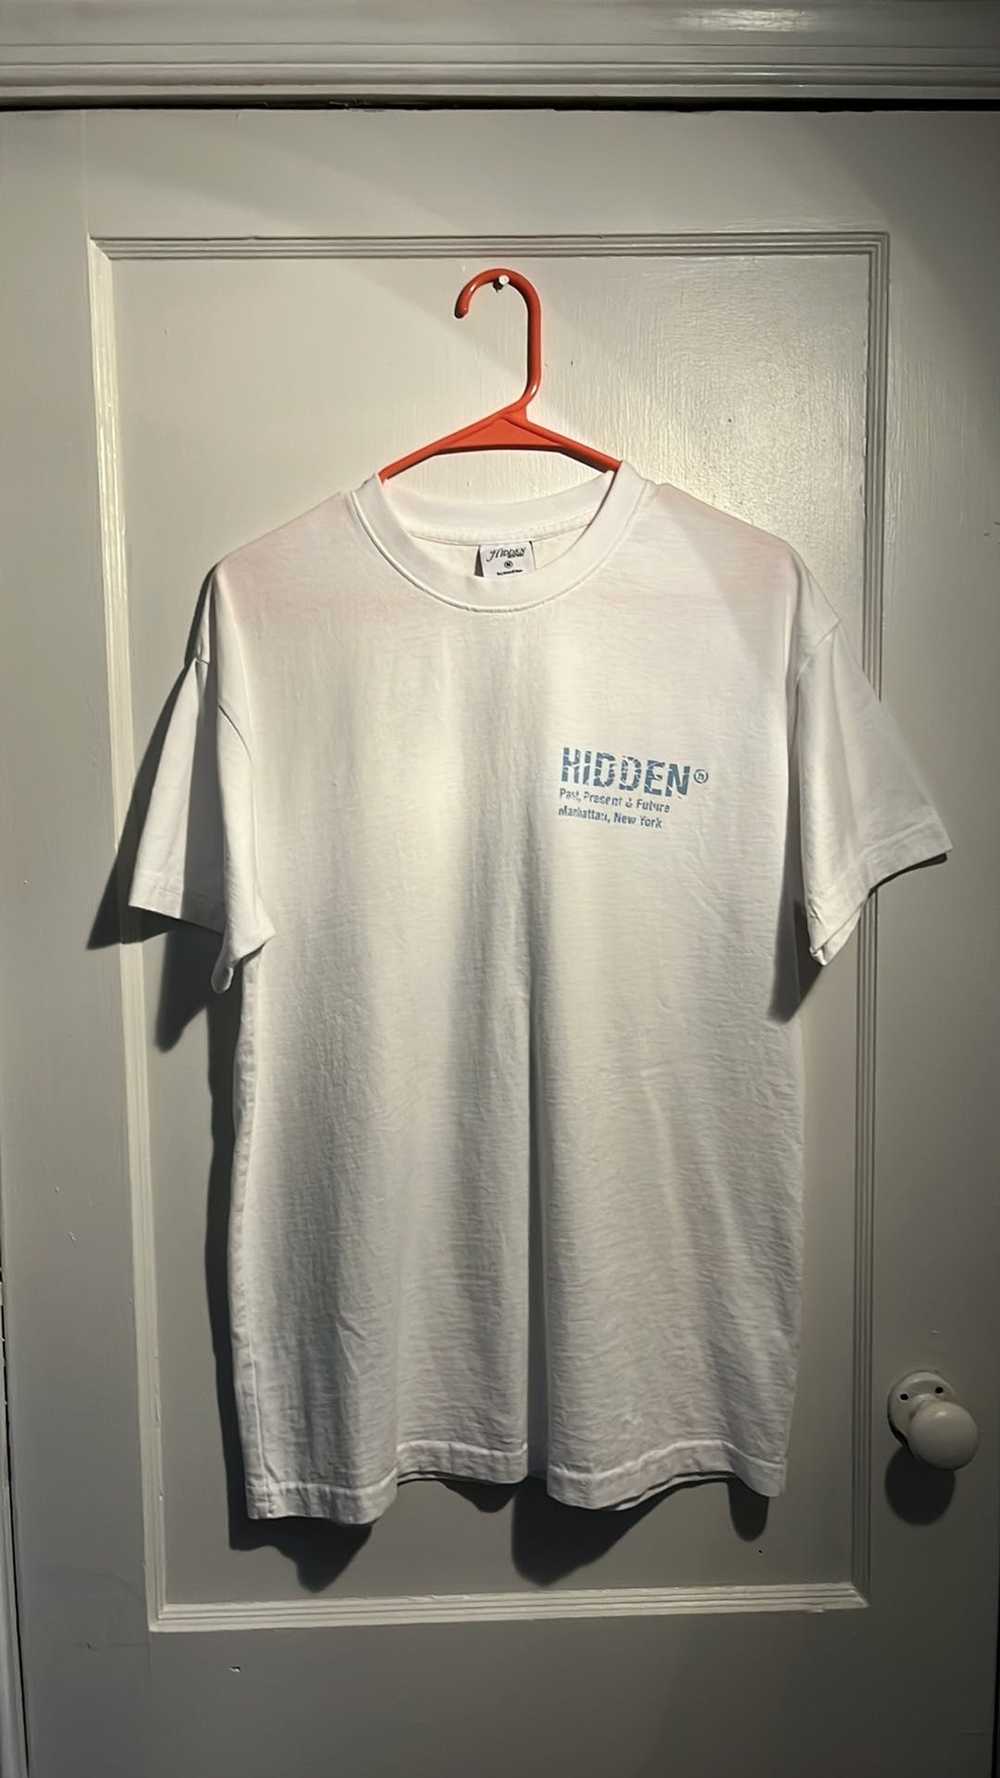 HIDDEN HIDDEN T-Shirt - image 1